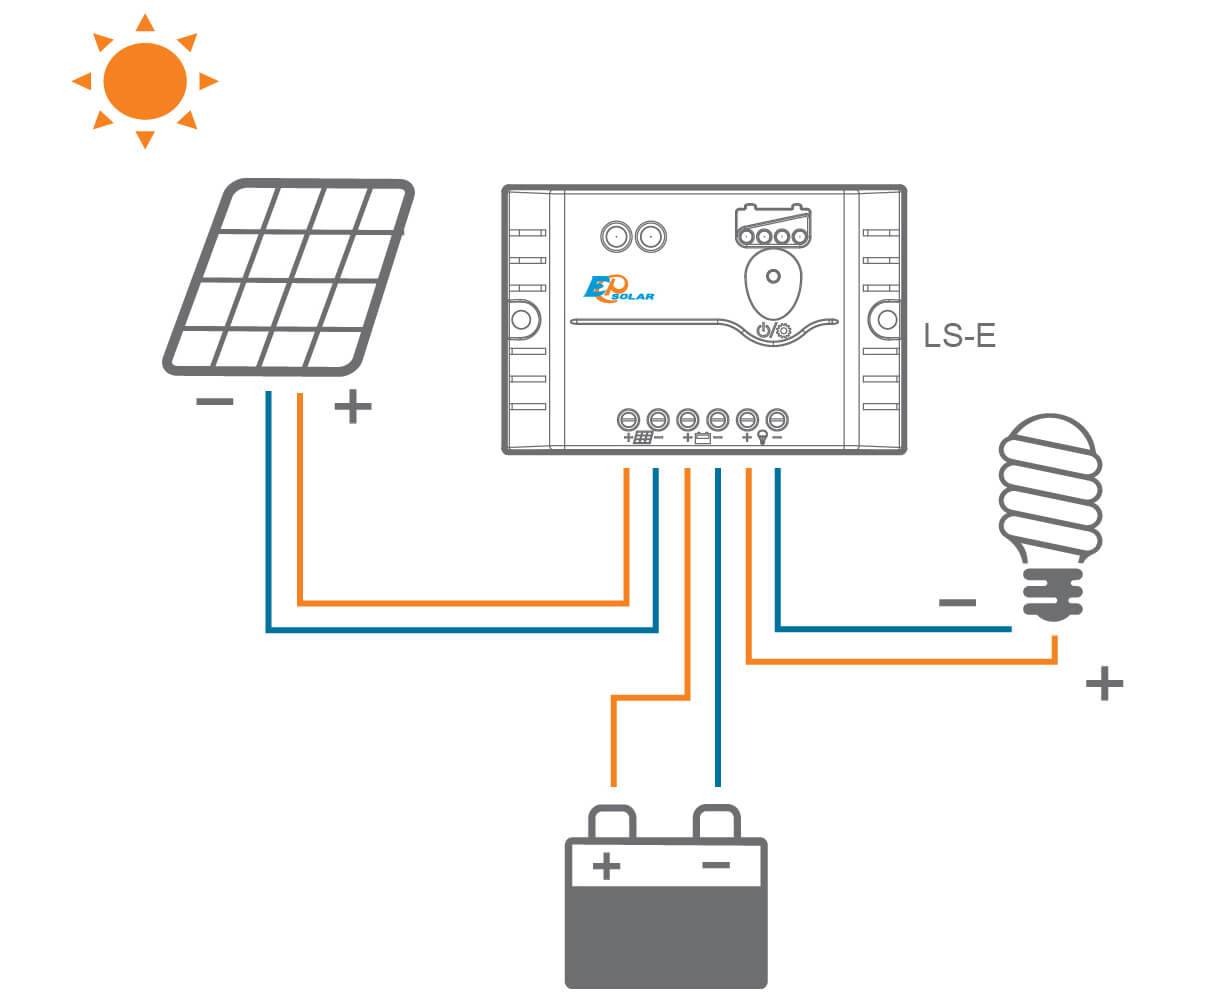 Виды контроллеров для солнечных батарей и как выбирать